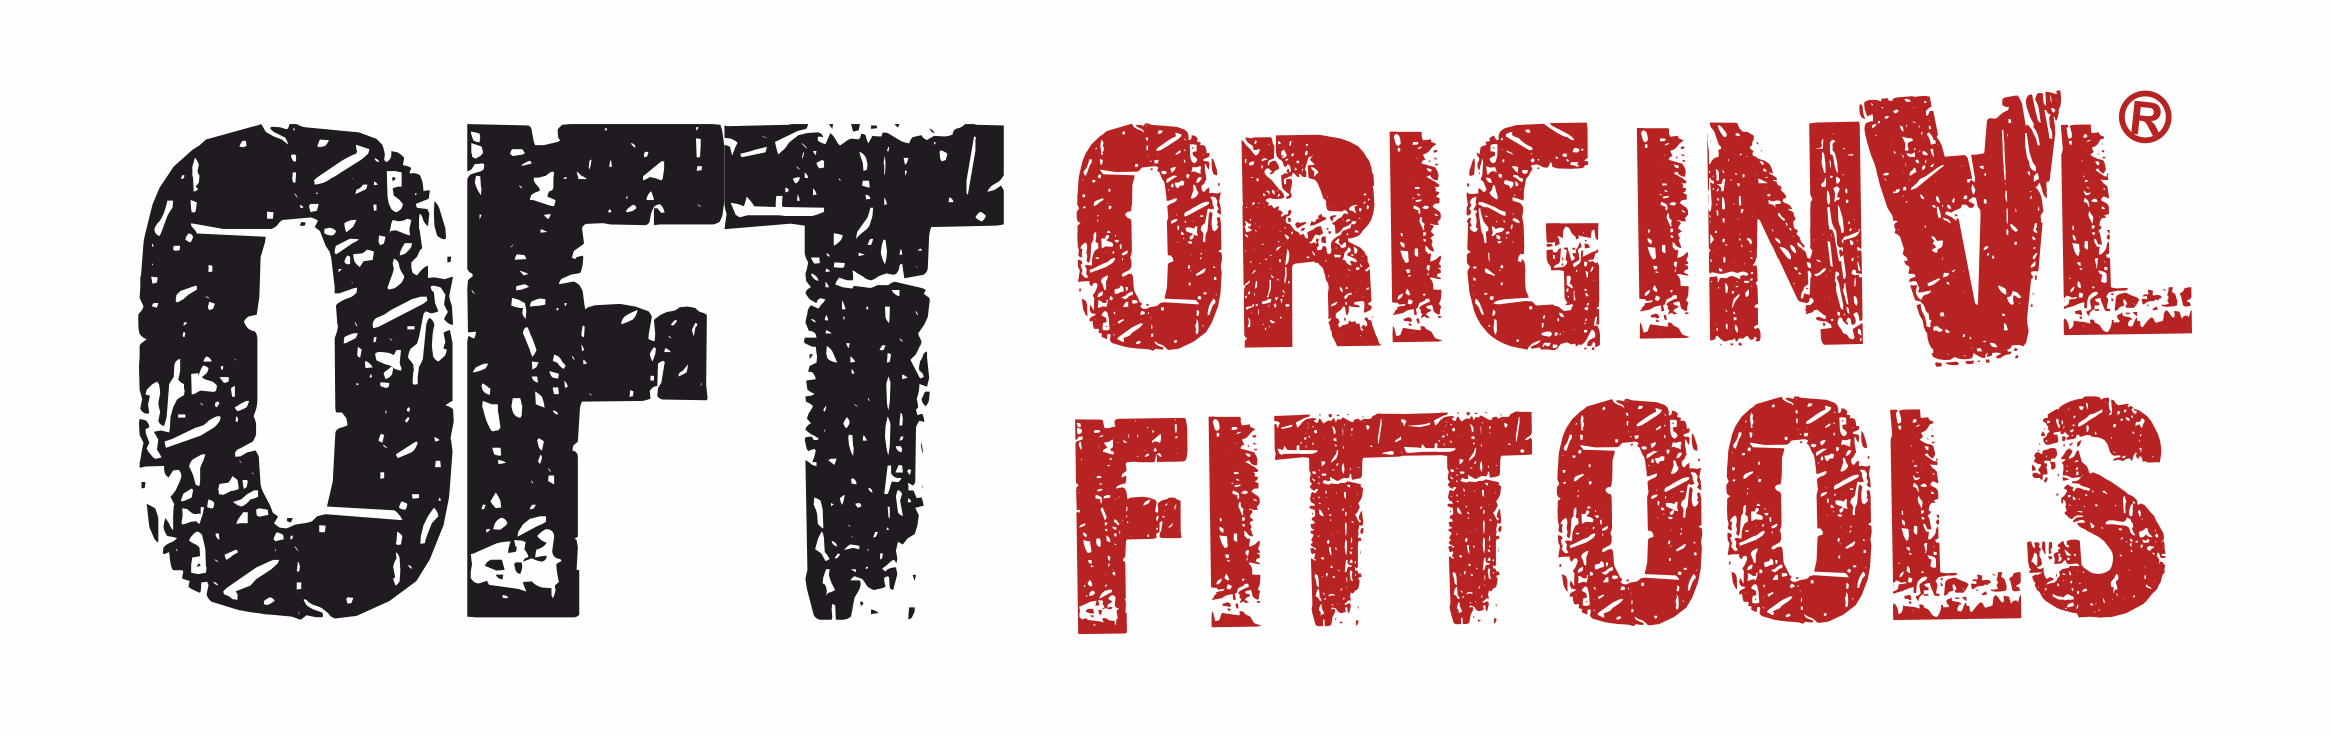 Original FitTools - всё для фитнеса, йоги, аэробики, пилатес.  +7(495)135-52-77